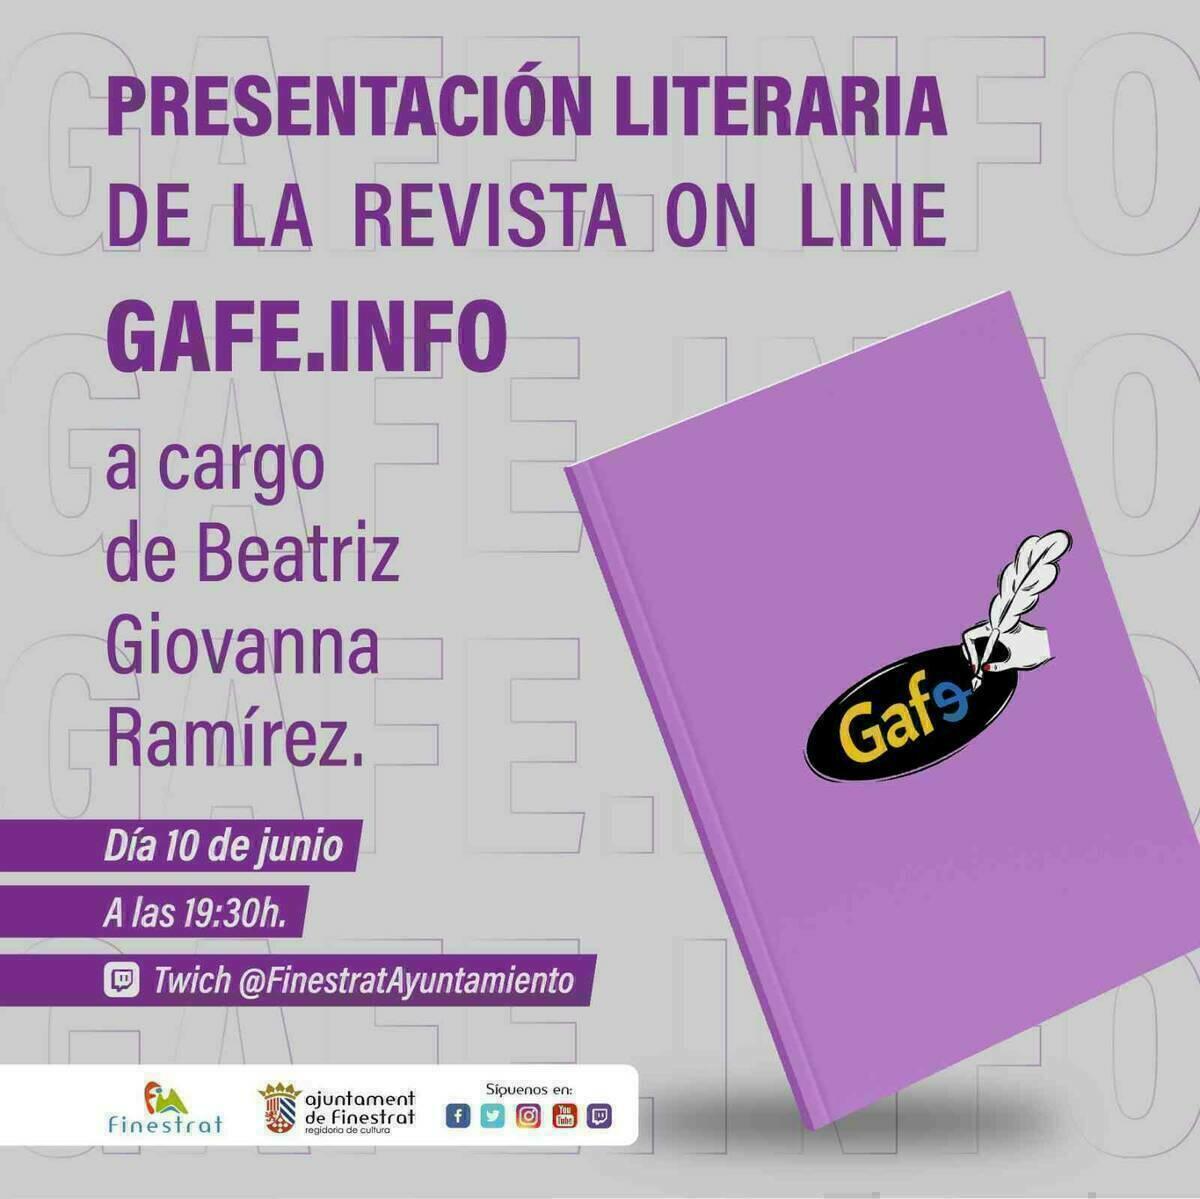 PRÓXIMA PRESENTACIÓN DE LA REVISTA LITERARIA ON LINE “GAFE.INFO” POR EL CANAL @FINESTRATAYUNTAMIENTO EN TWICH